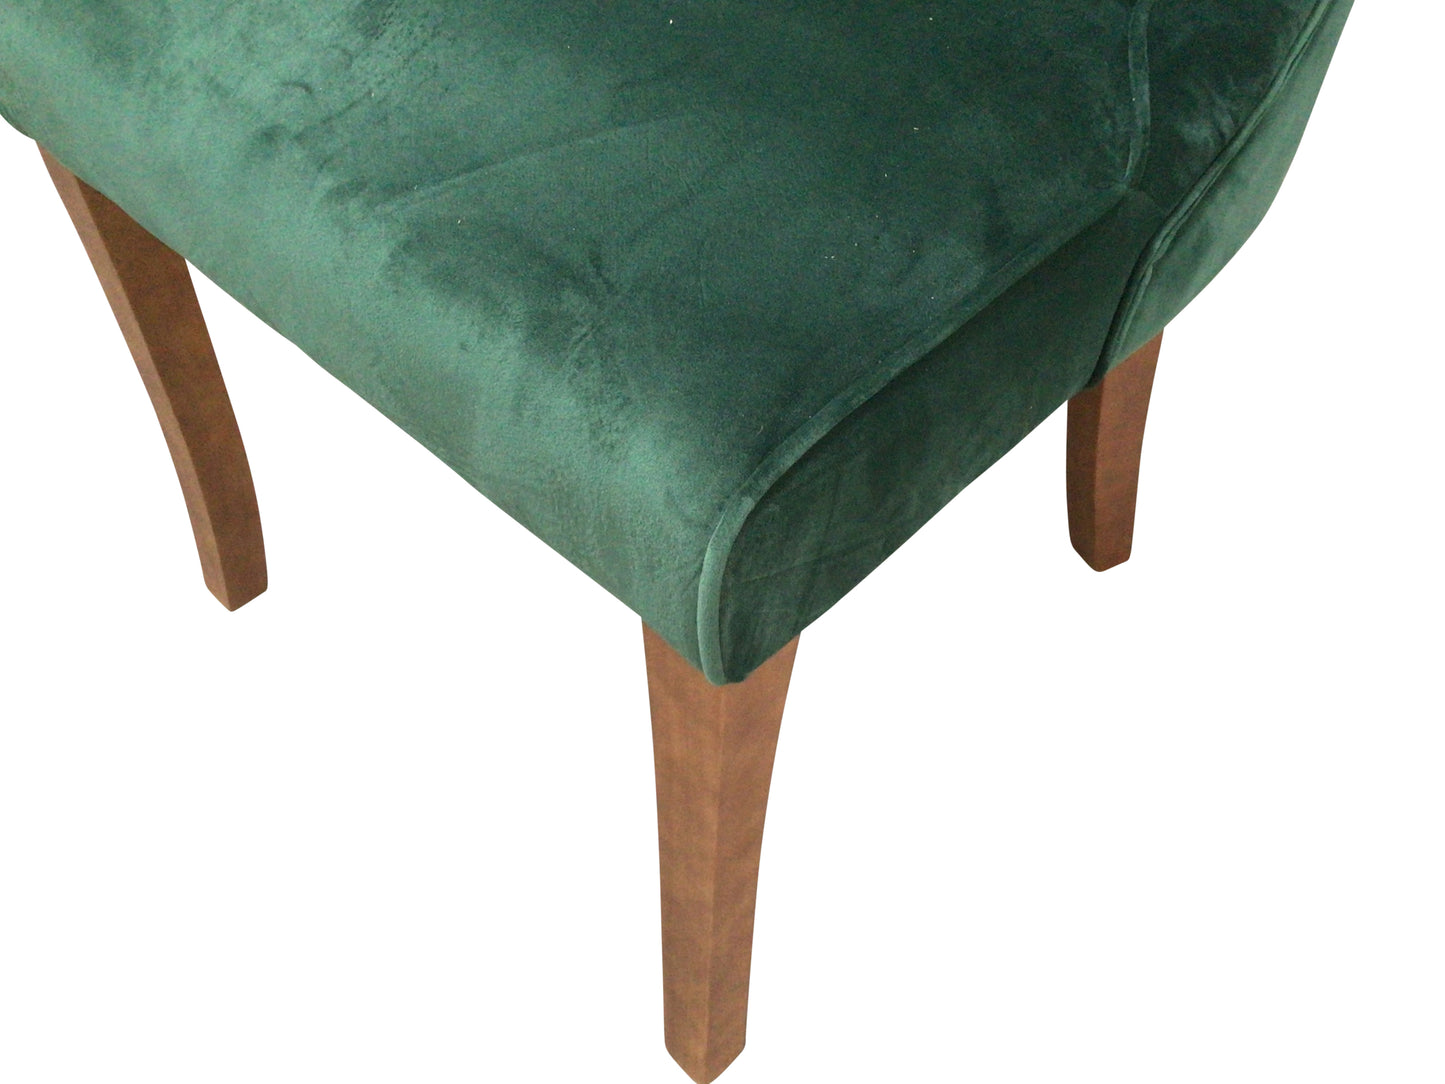 Kingston Green Velvet Dining Chair